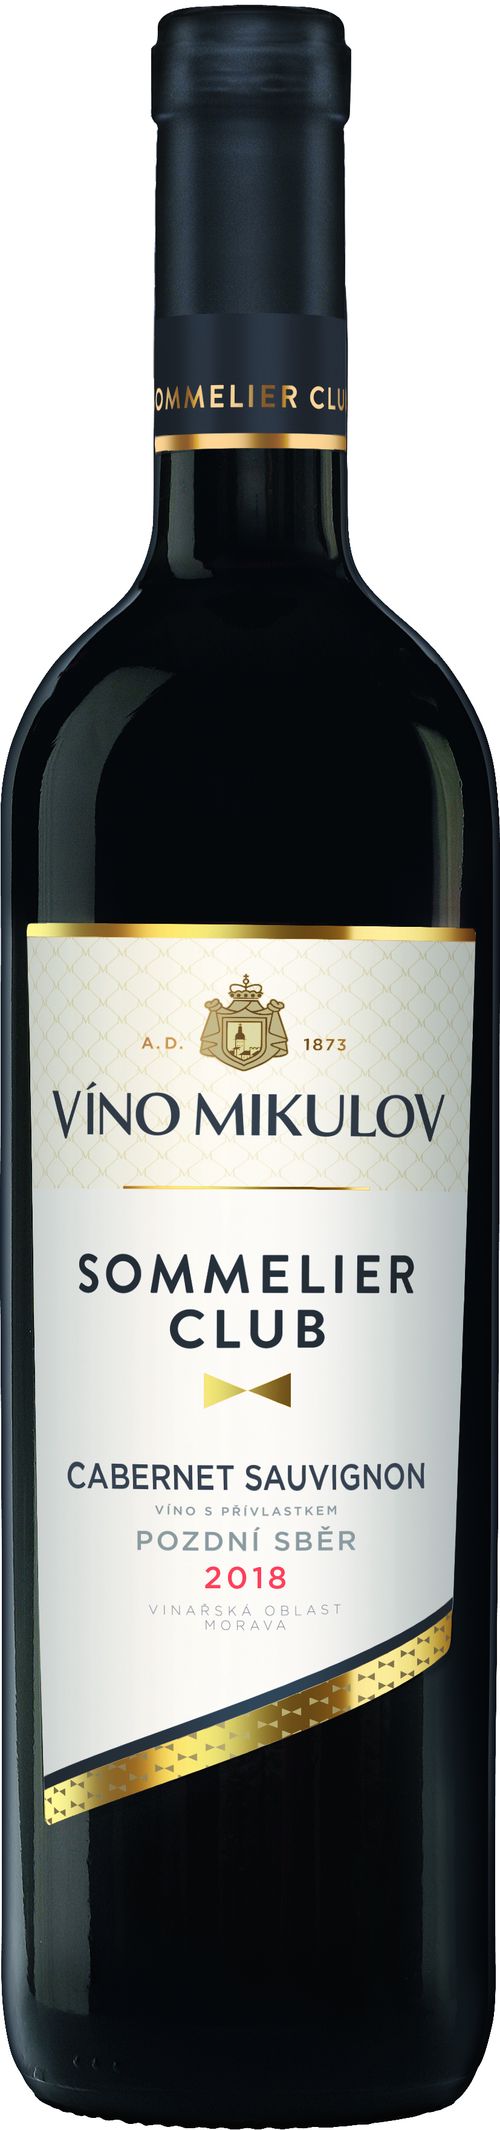 Víno Mikulov Sommelier Club Cabernet Sauvignon 2018 pozdní sběr 0.75l